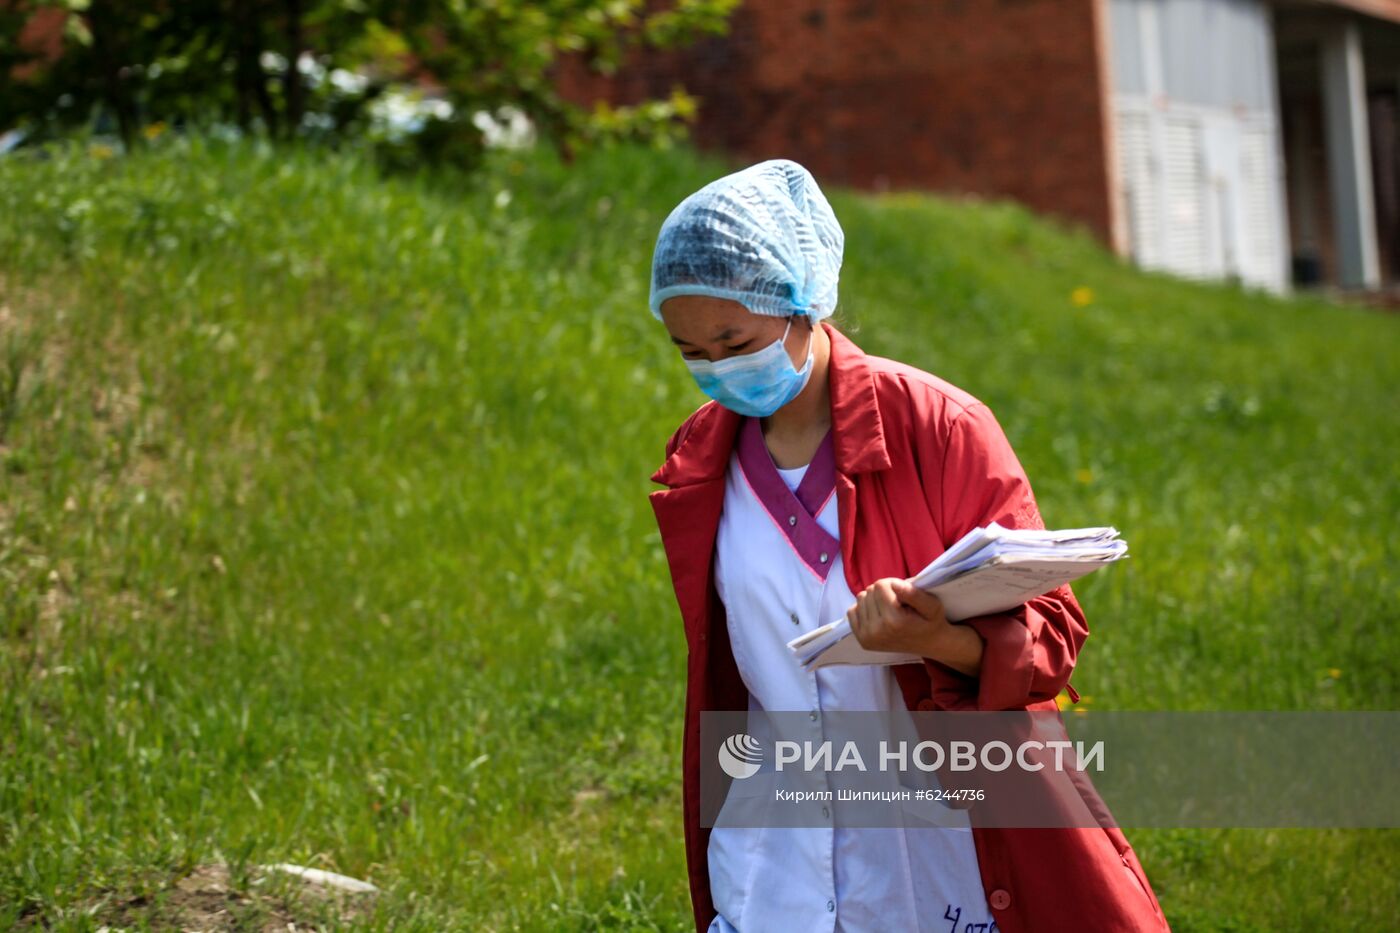 Иркутская инфекционная больница